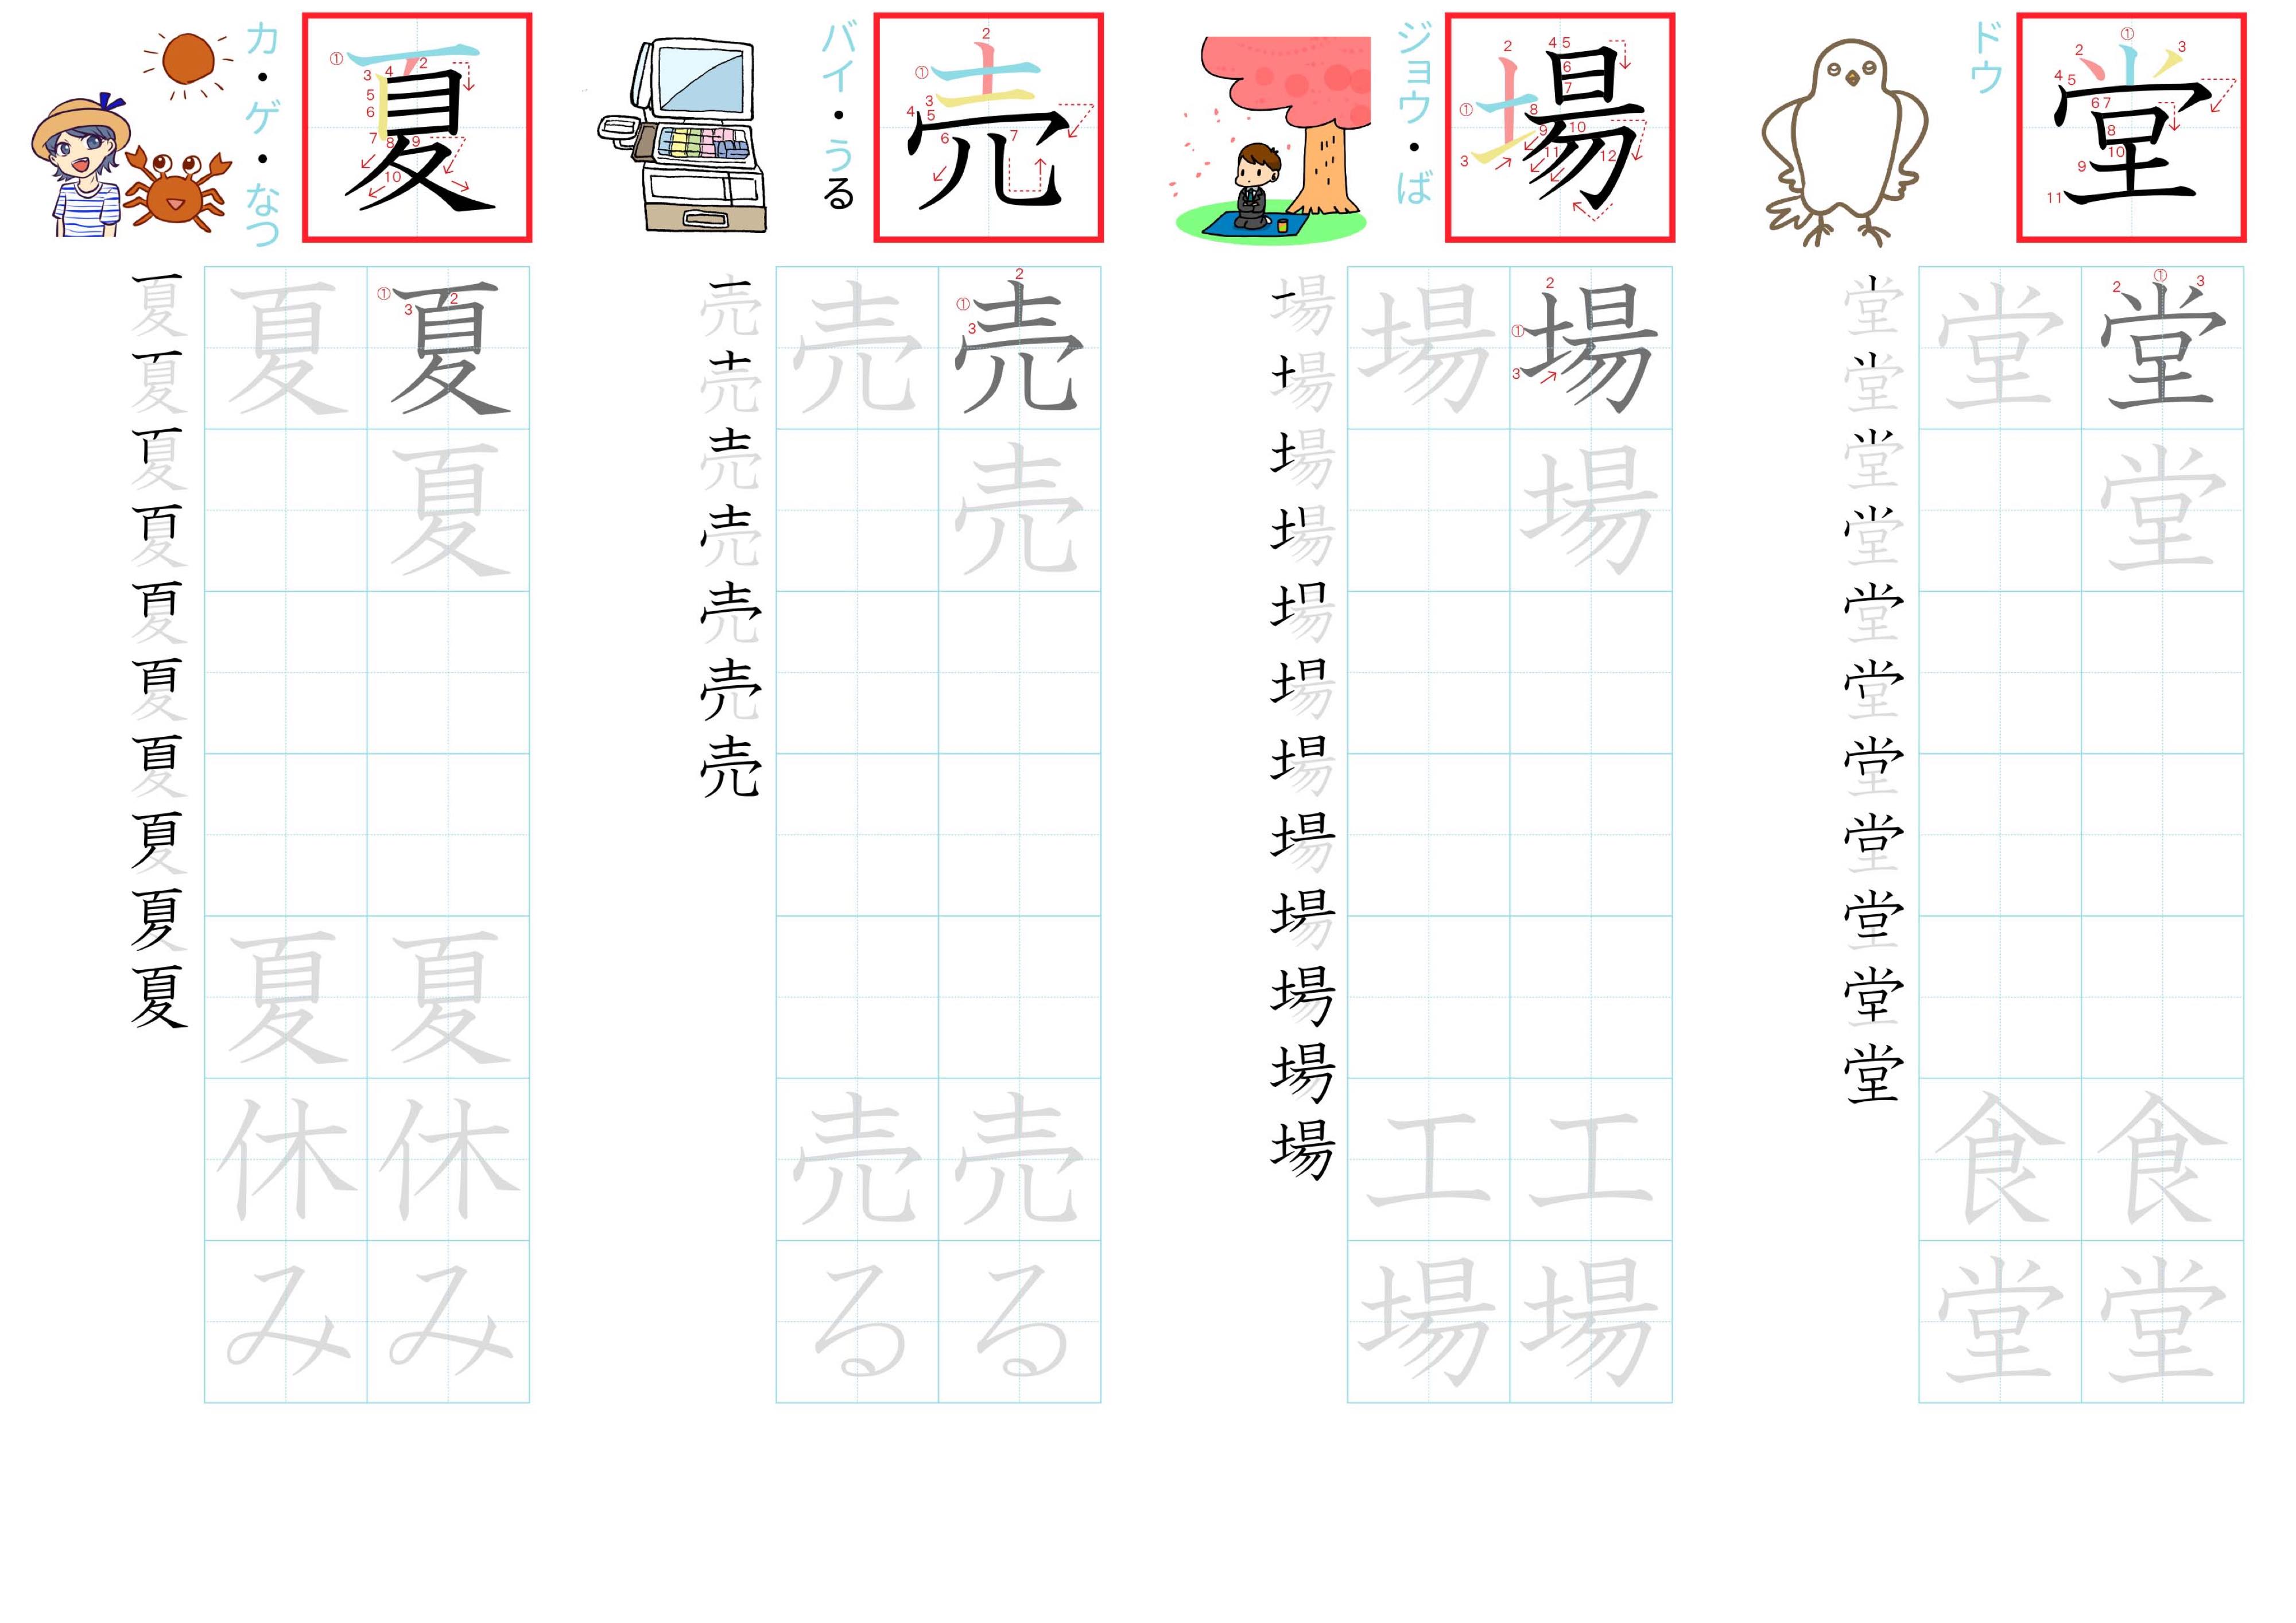 kanji-practice-card-n4-japanese-030